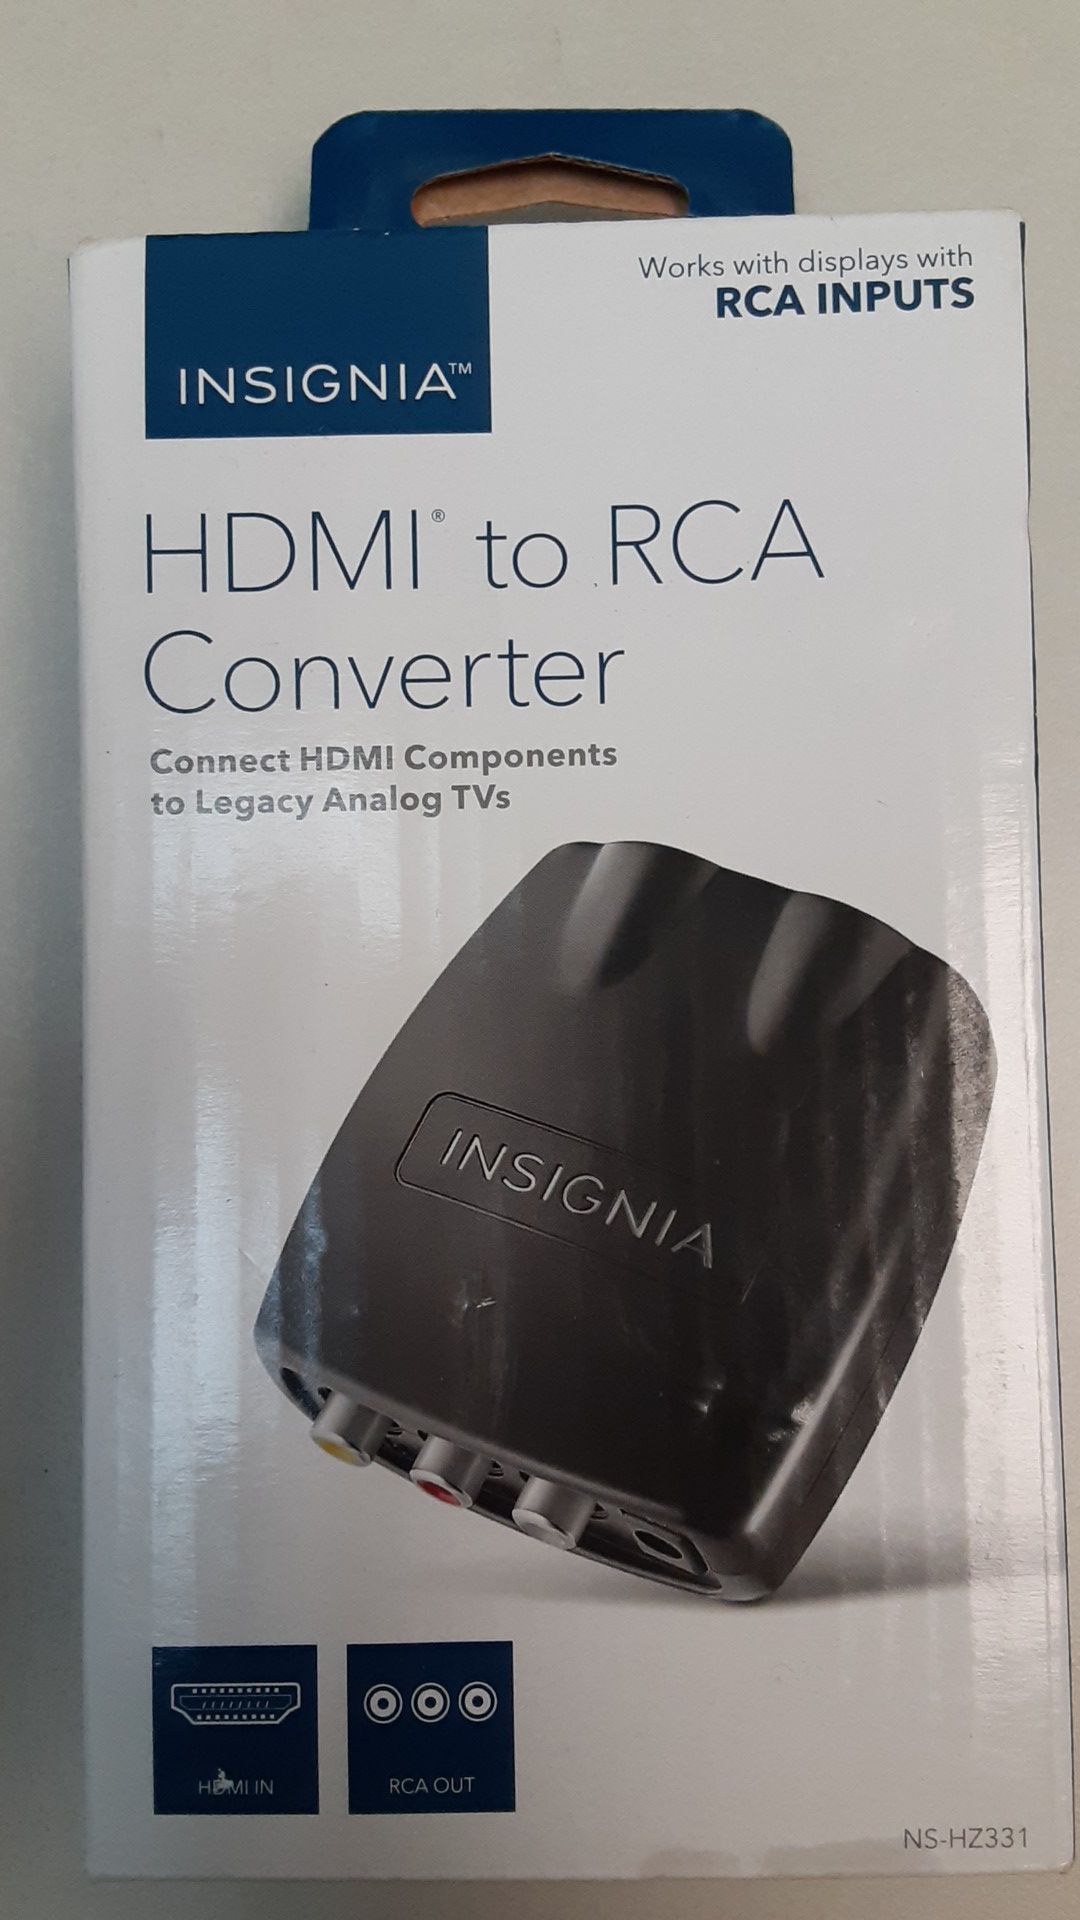 HDMI to RCA converter